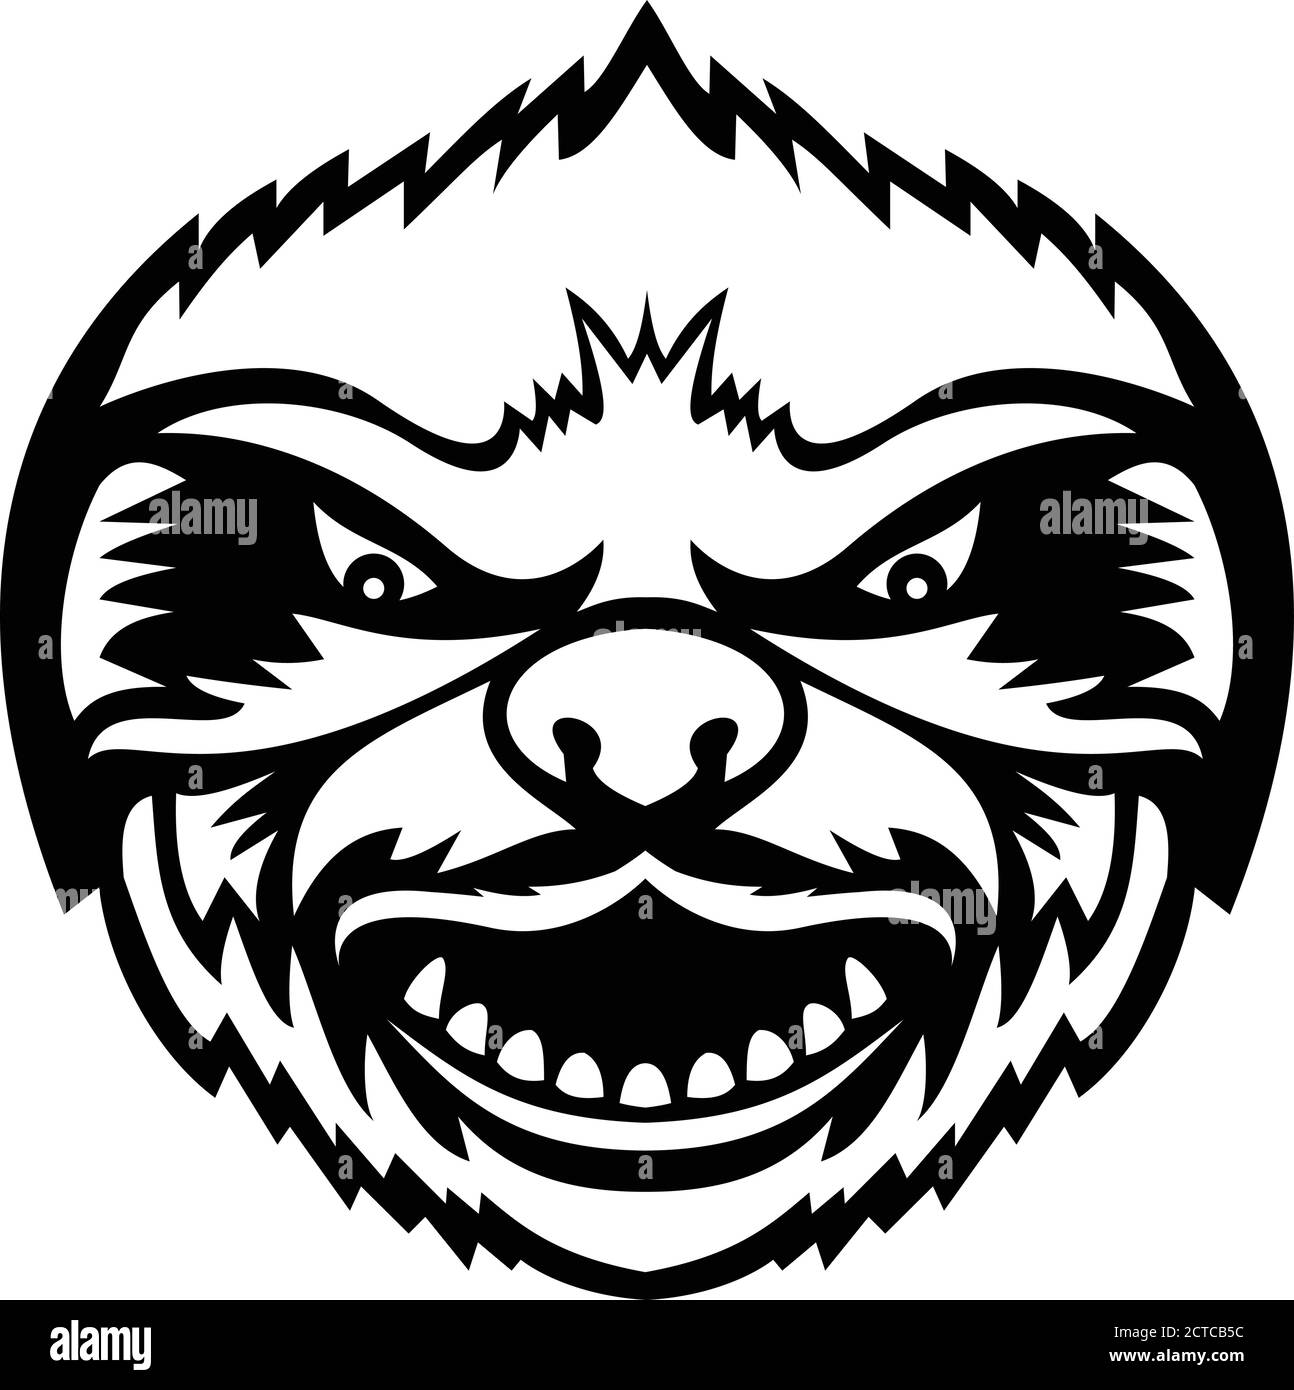 Mascot nero e bianco illustrazione della testa di un arrabbiato Sloth, un mammifero arboreo nelle foreste pluviali tropicali del Sud America e dell'America Centrale vie Illustrazione Vettoriale